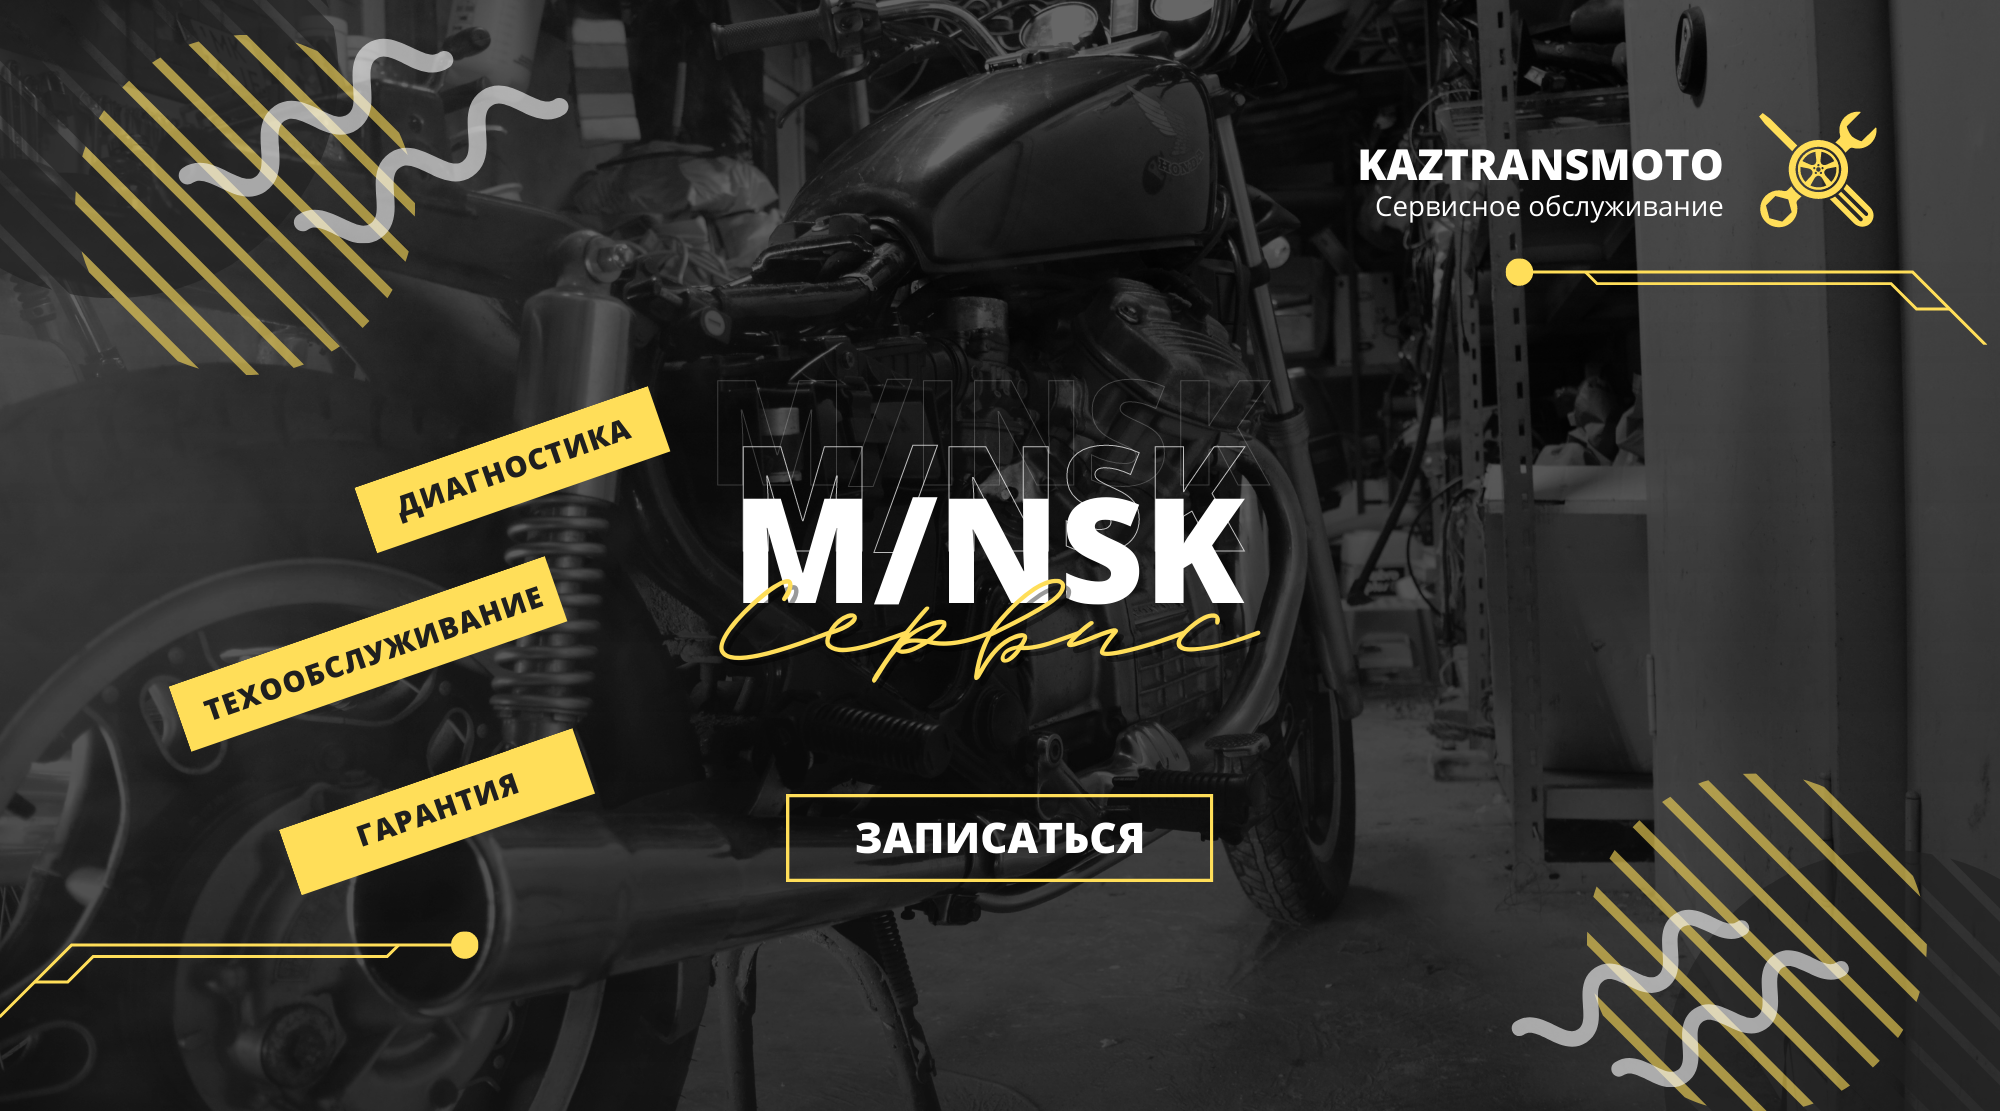 Техническое обслуживание мотоциклов Минск в Казахстане